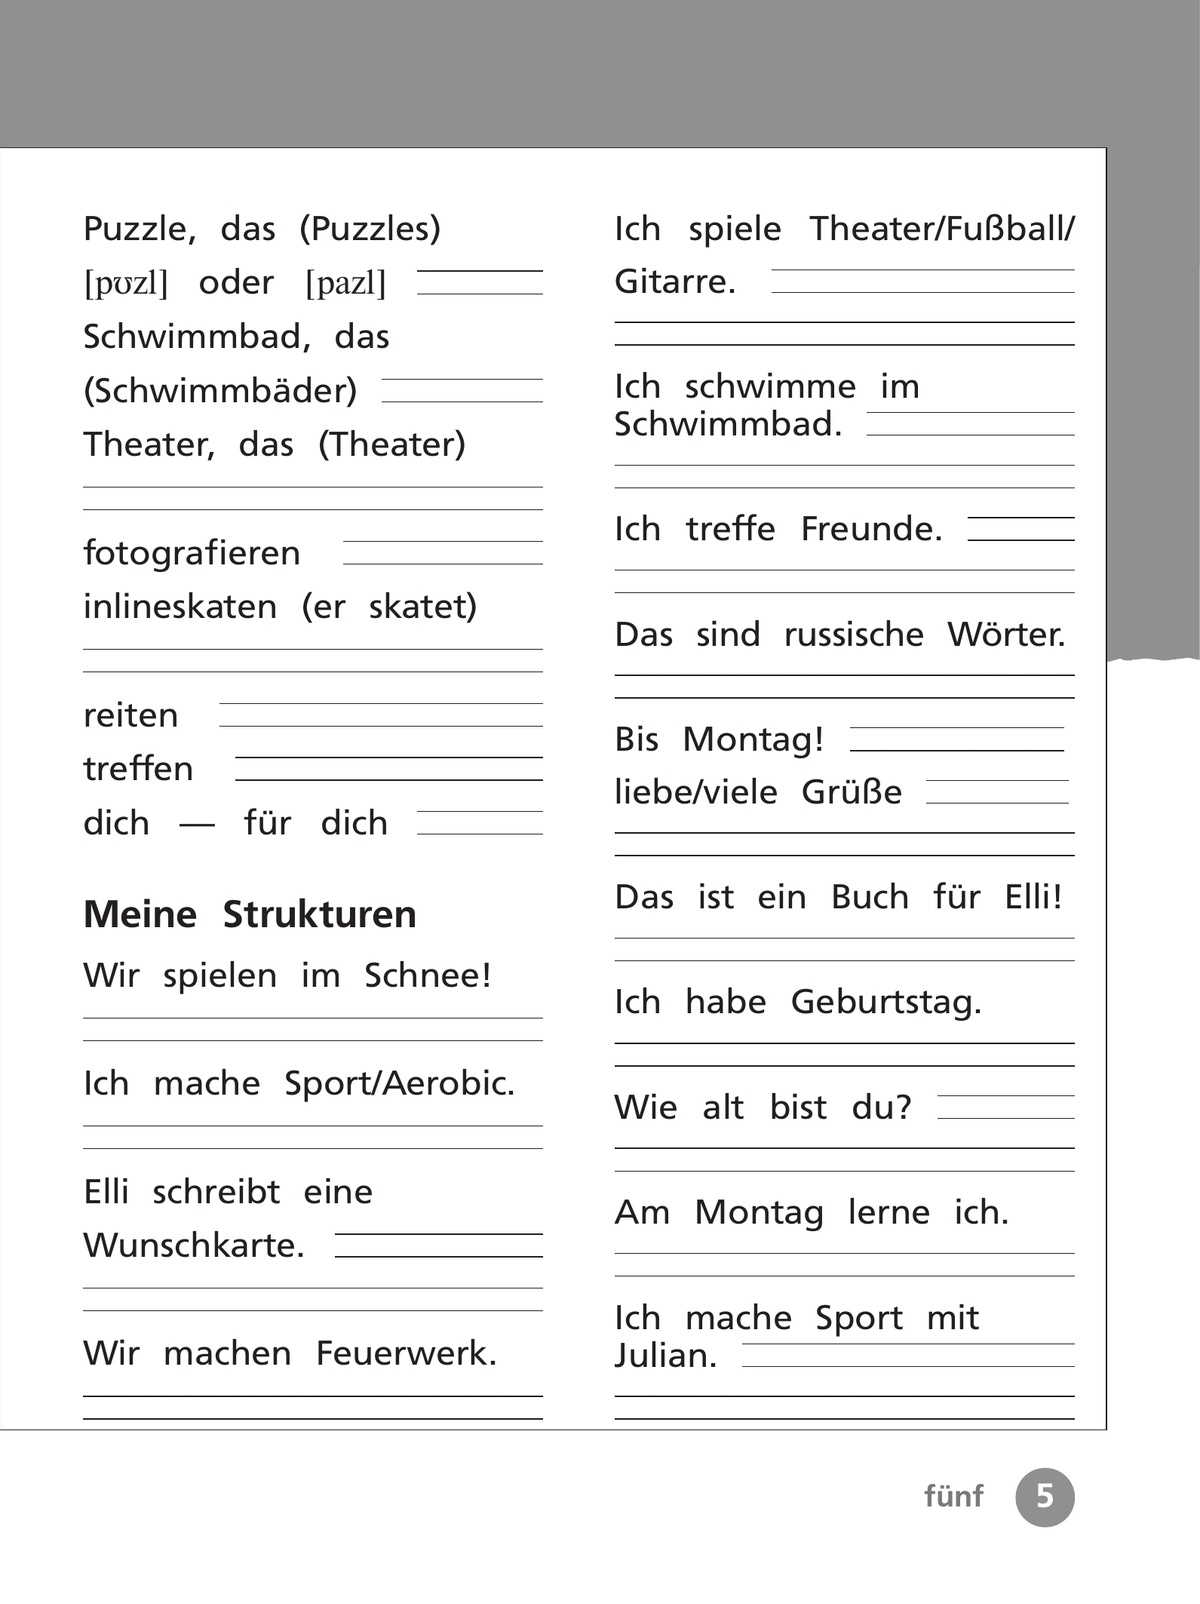 Немецкий язык. Рабочая тетрадь. 2 класс В 2-х ч. Ч. 2 6